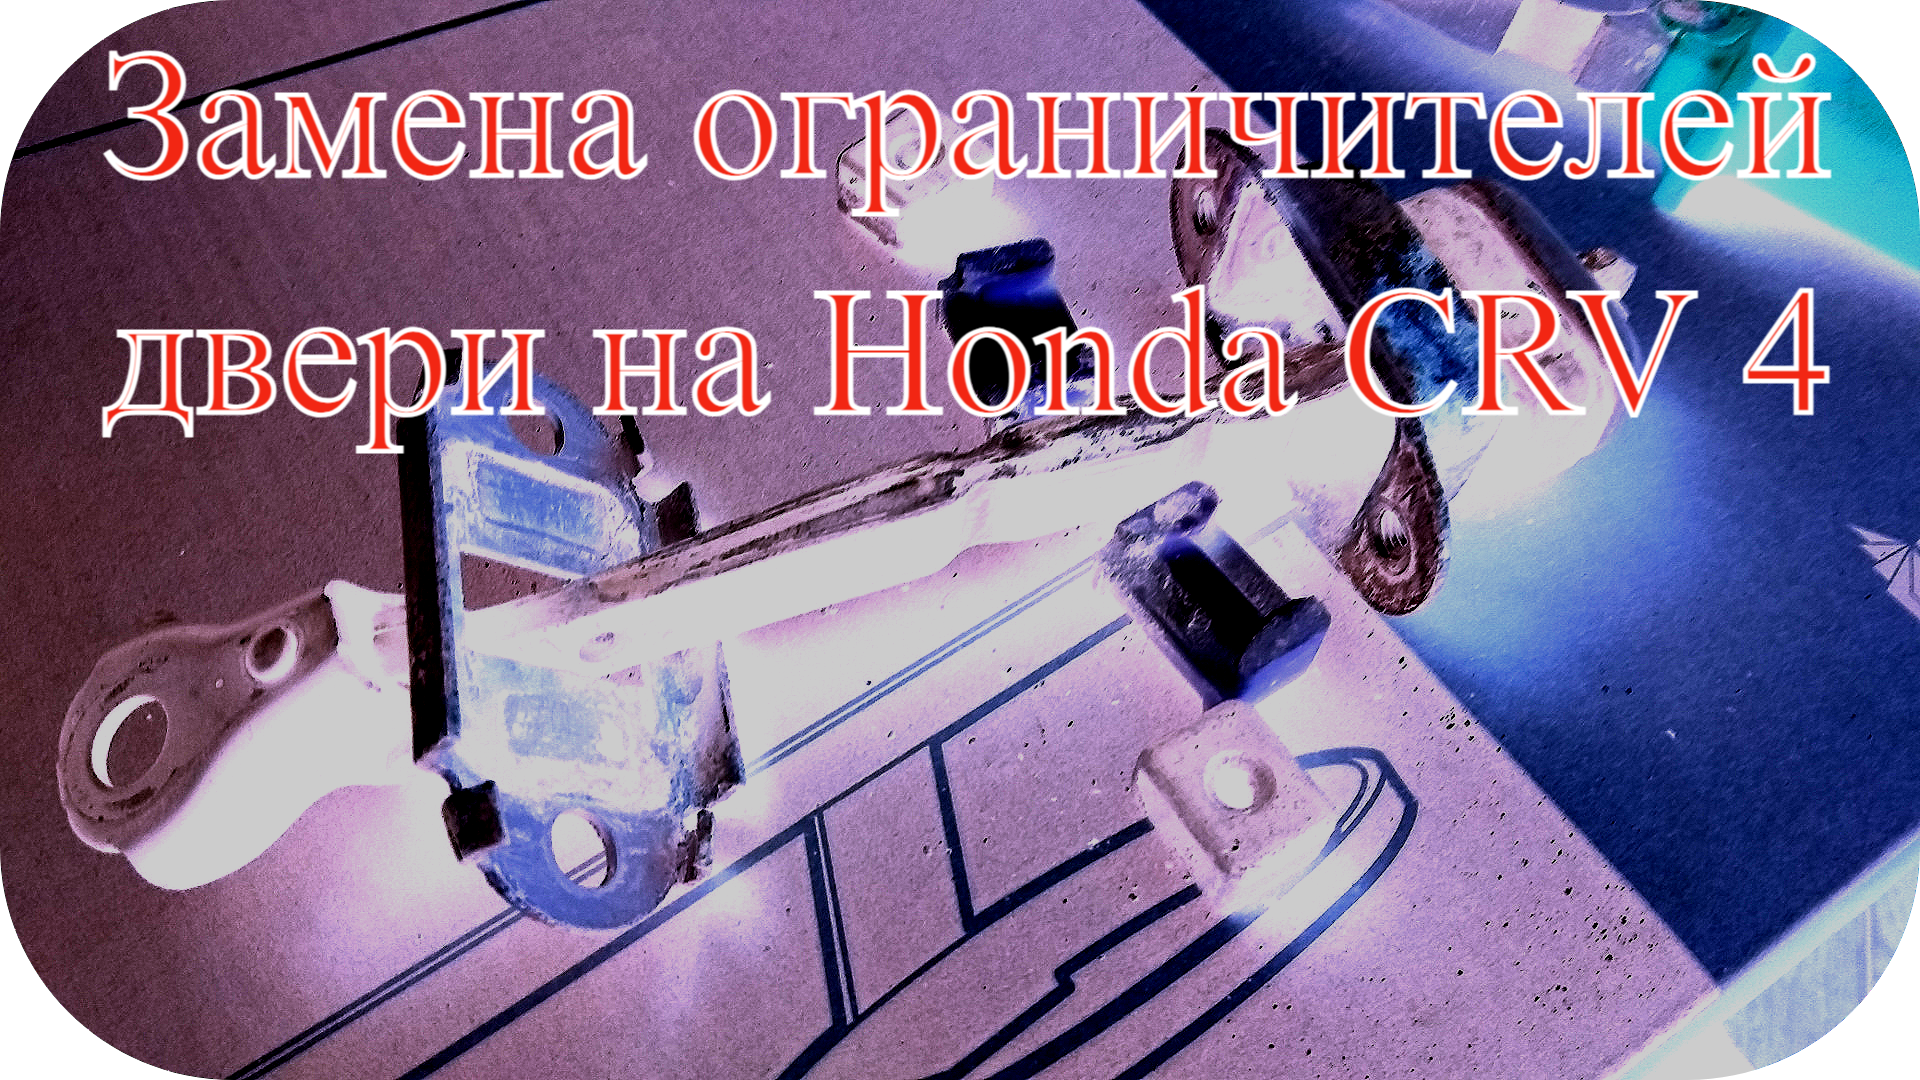 Идеальный гайд: пошаговая инструкция замены ограничителей дверей на Honda CR-V 4 своими руками